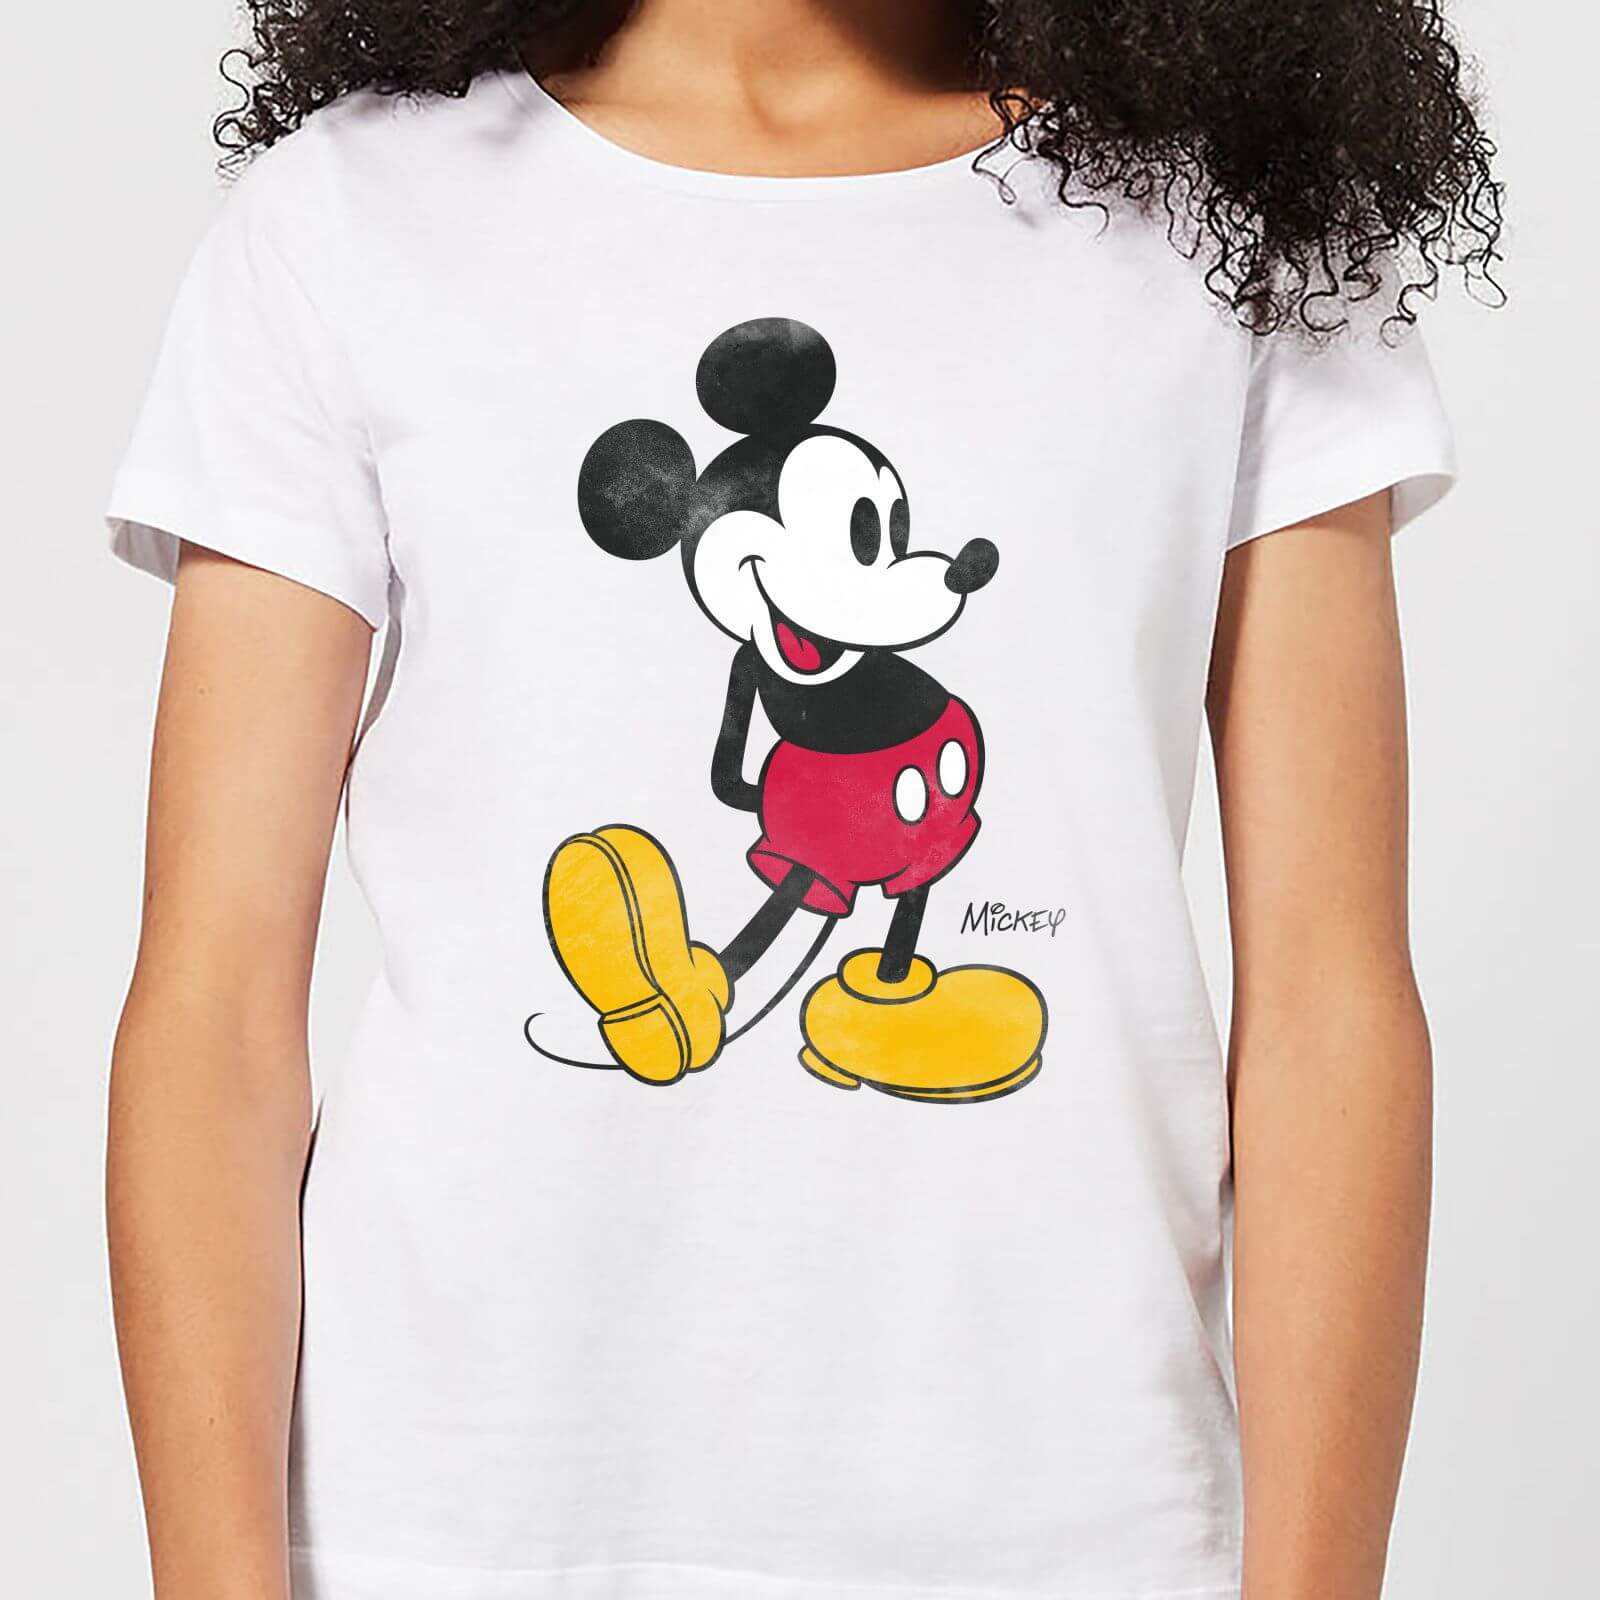 Disney Mickey Mouse Classic Kick Women's T-Shirt - White - L - White